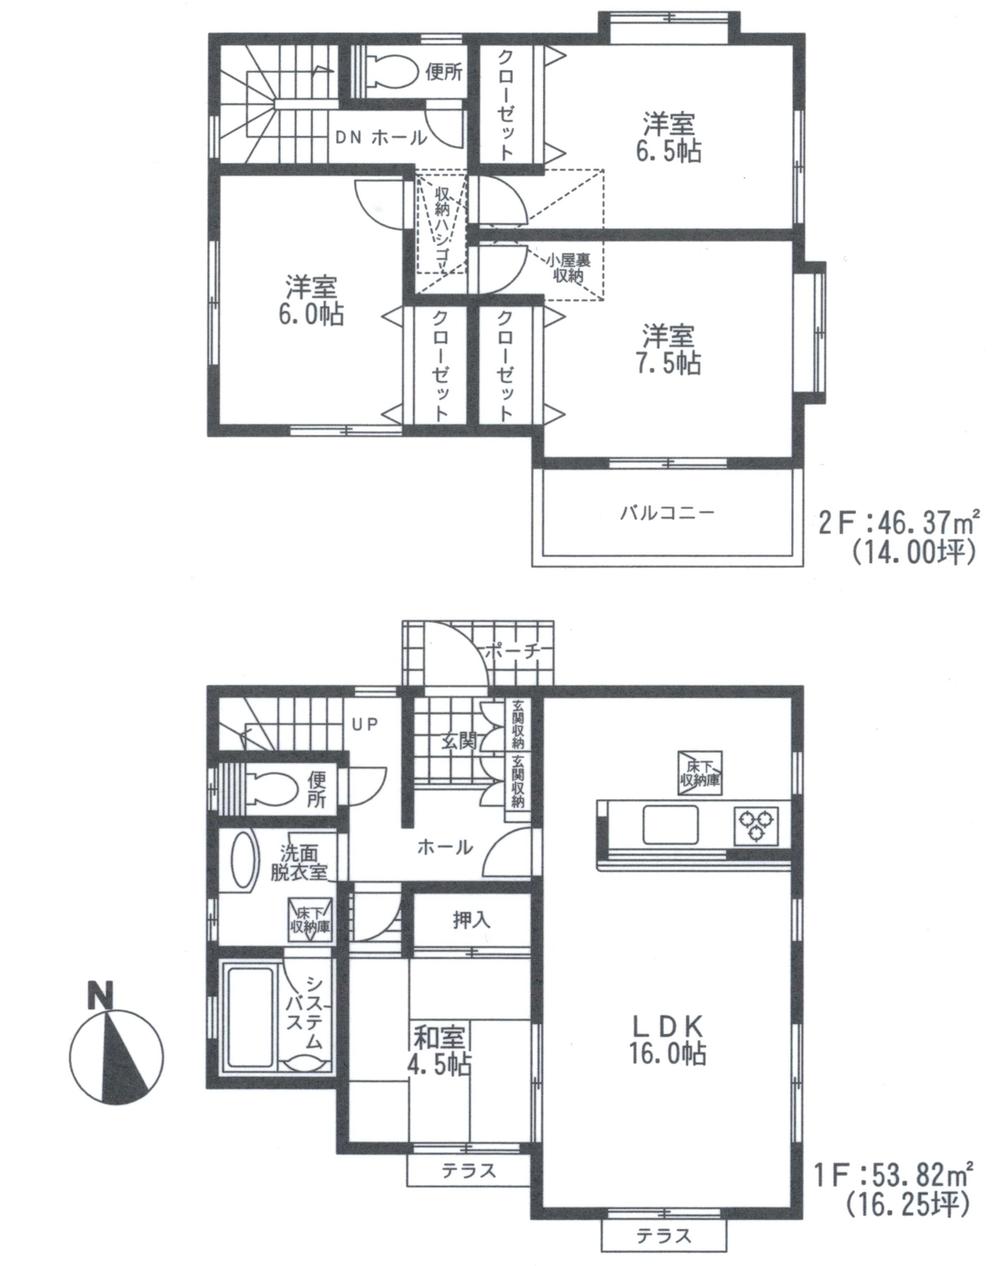 Floor plan. 23.8 million yen, 4LDK, Land area 138.97 sq m , Building area 100.19 sq m